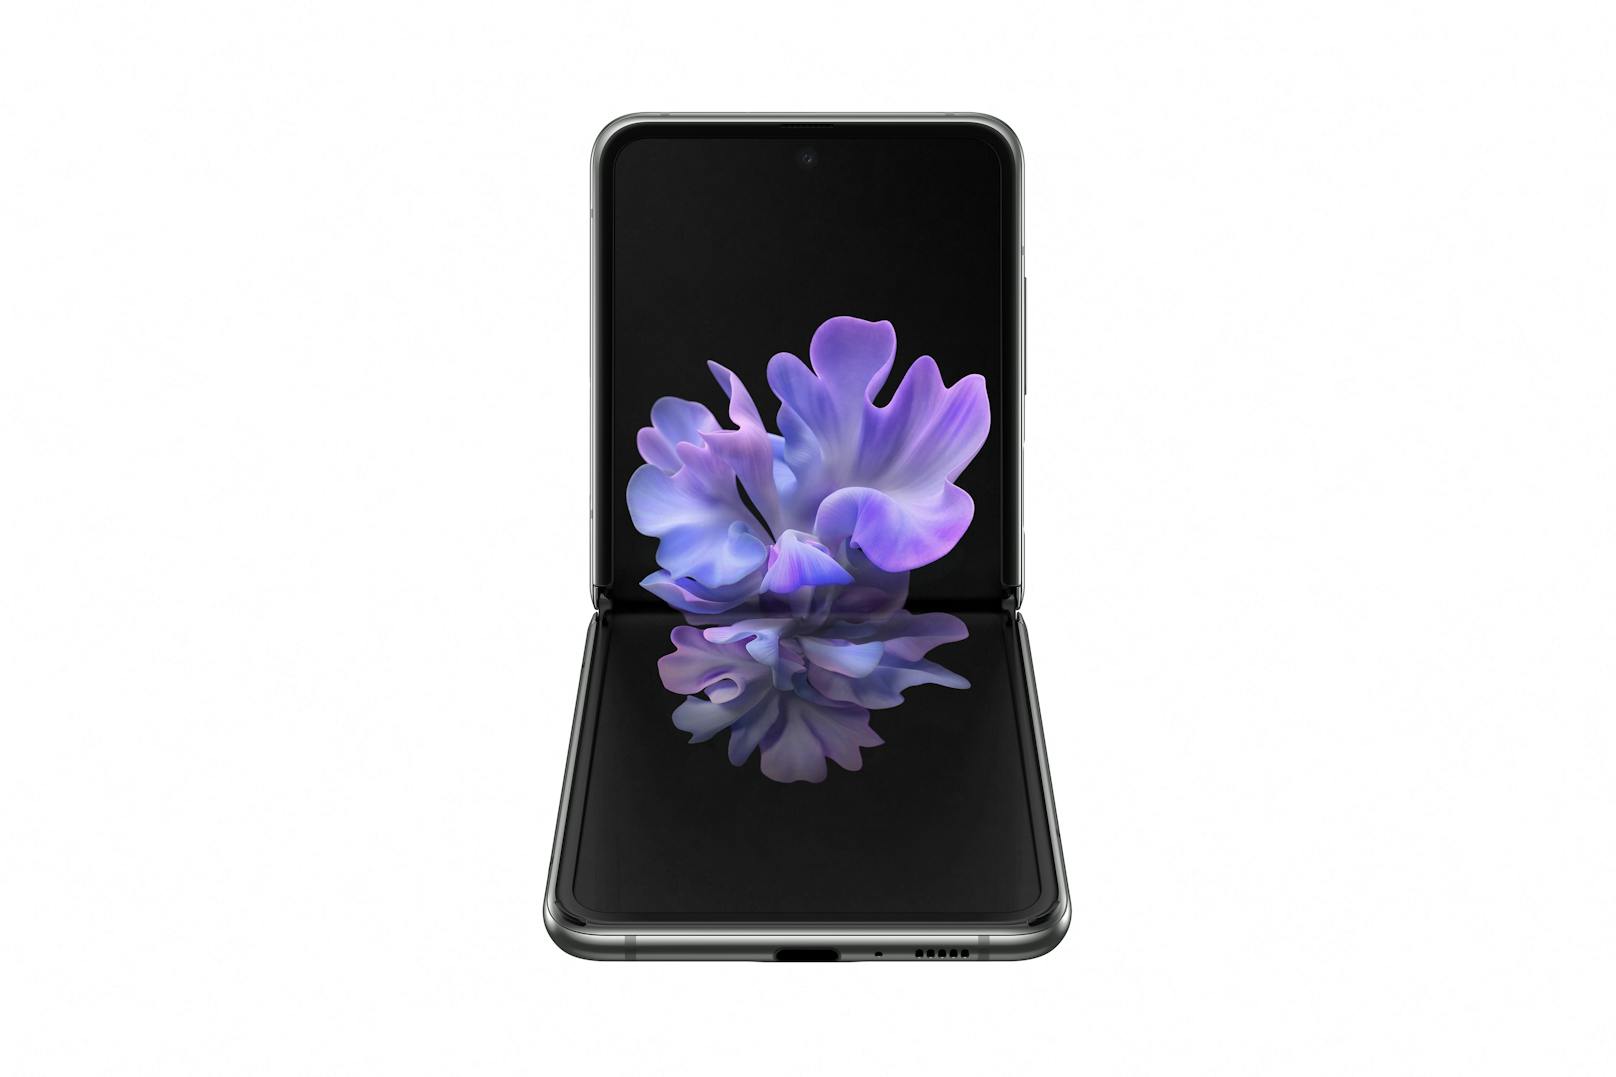 Das neue Galaxy Z Flip 5G glänzt in neuem Look in Mystic Gray und Mystic Bronze und mit leistungsstarkem SDM 865+ Prozessor.